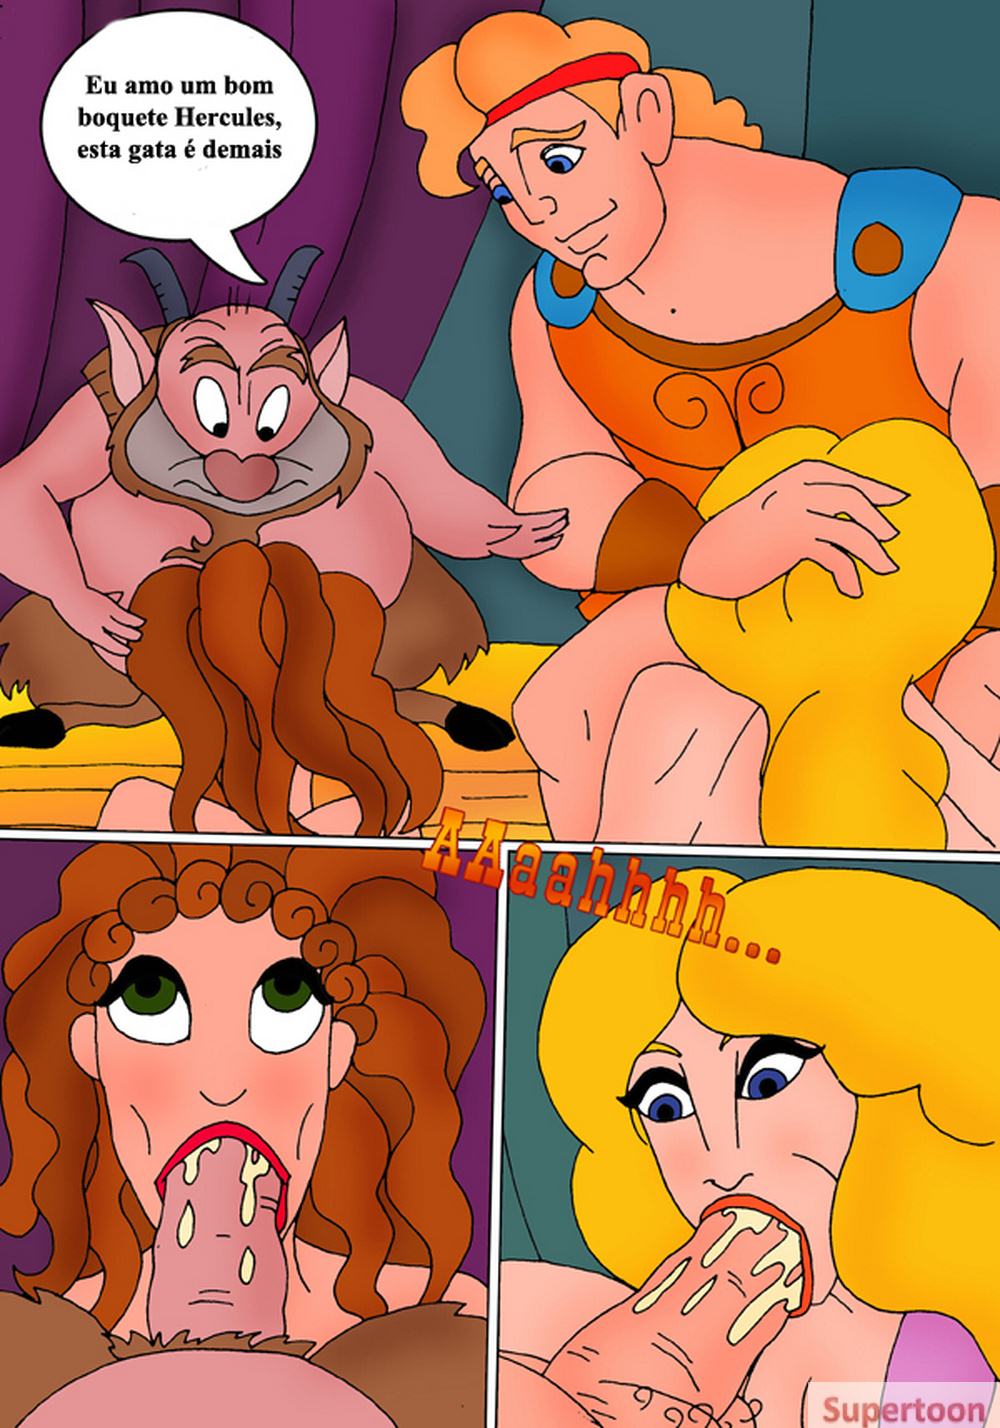 Bokep Hercules - HQ ErÃ³tico - Aventuras Sexuais De Hercules - Disney Porno â€“ Hentai - HQ  Porno